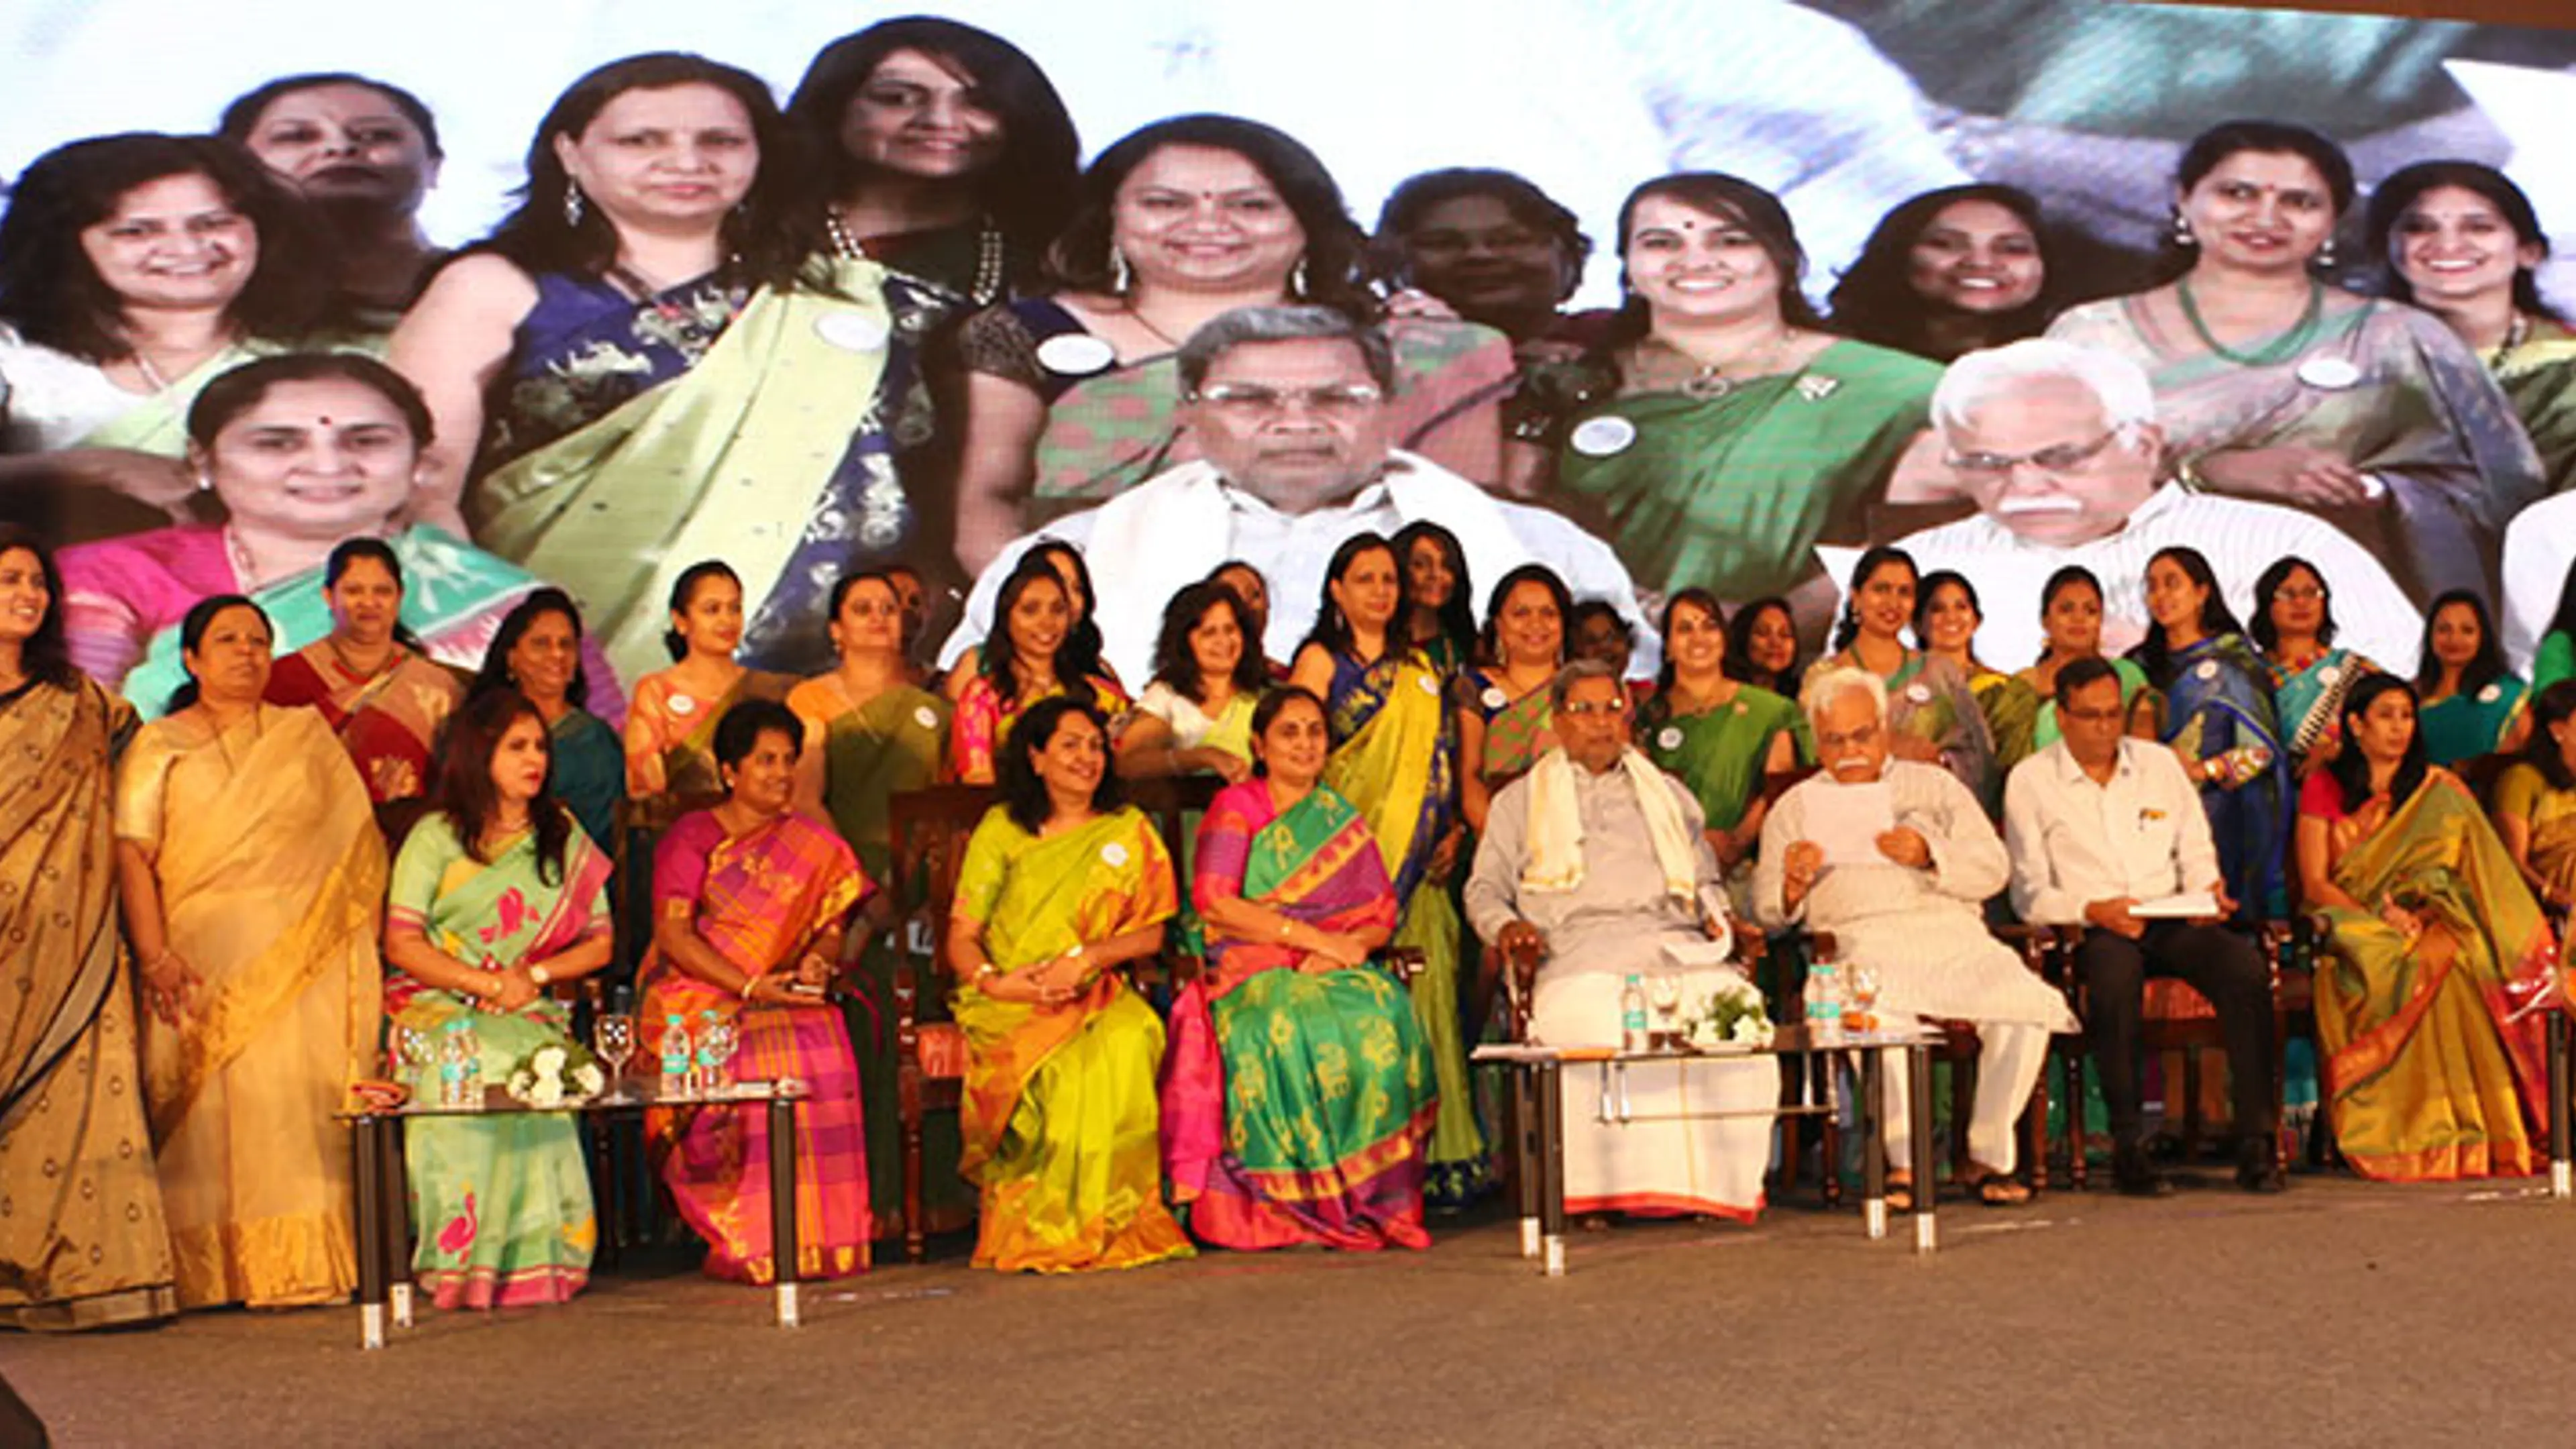 Karnataka women associations form consortium to seek better opportunities